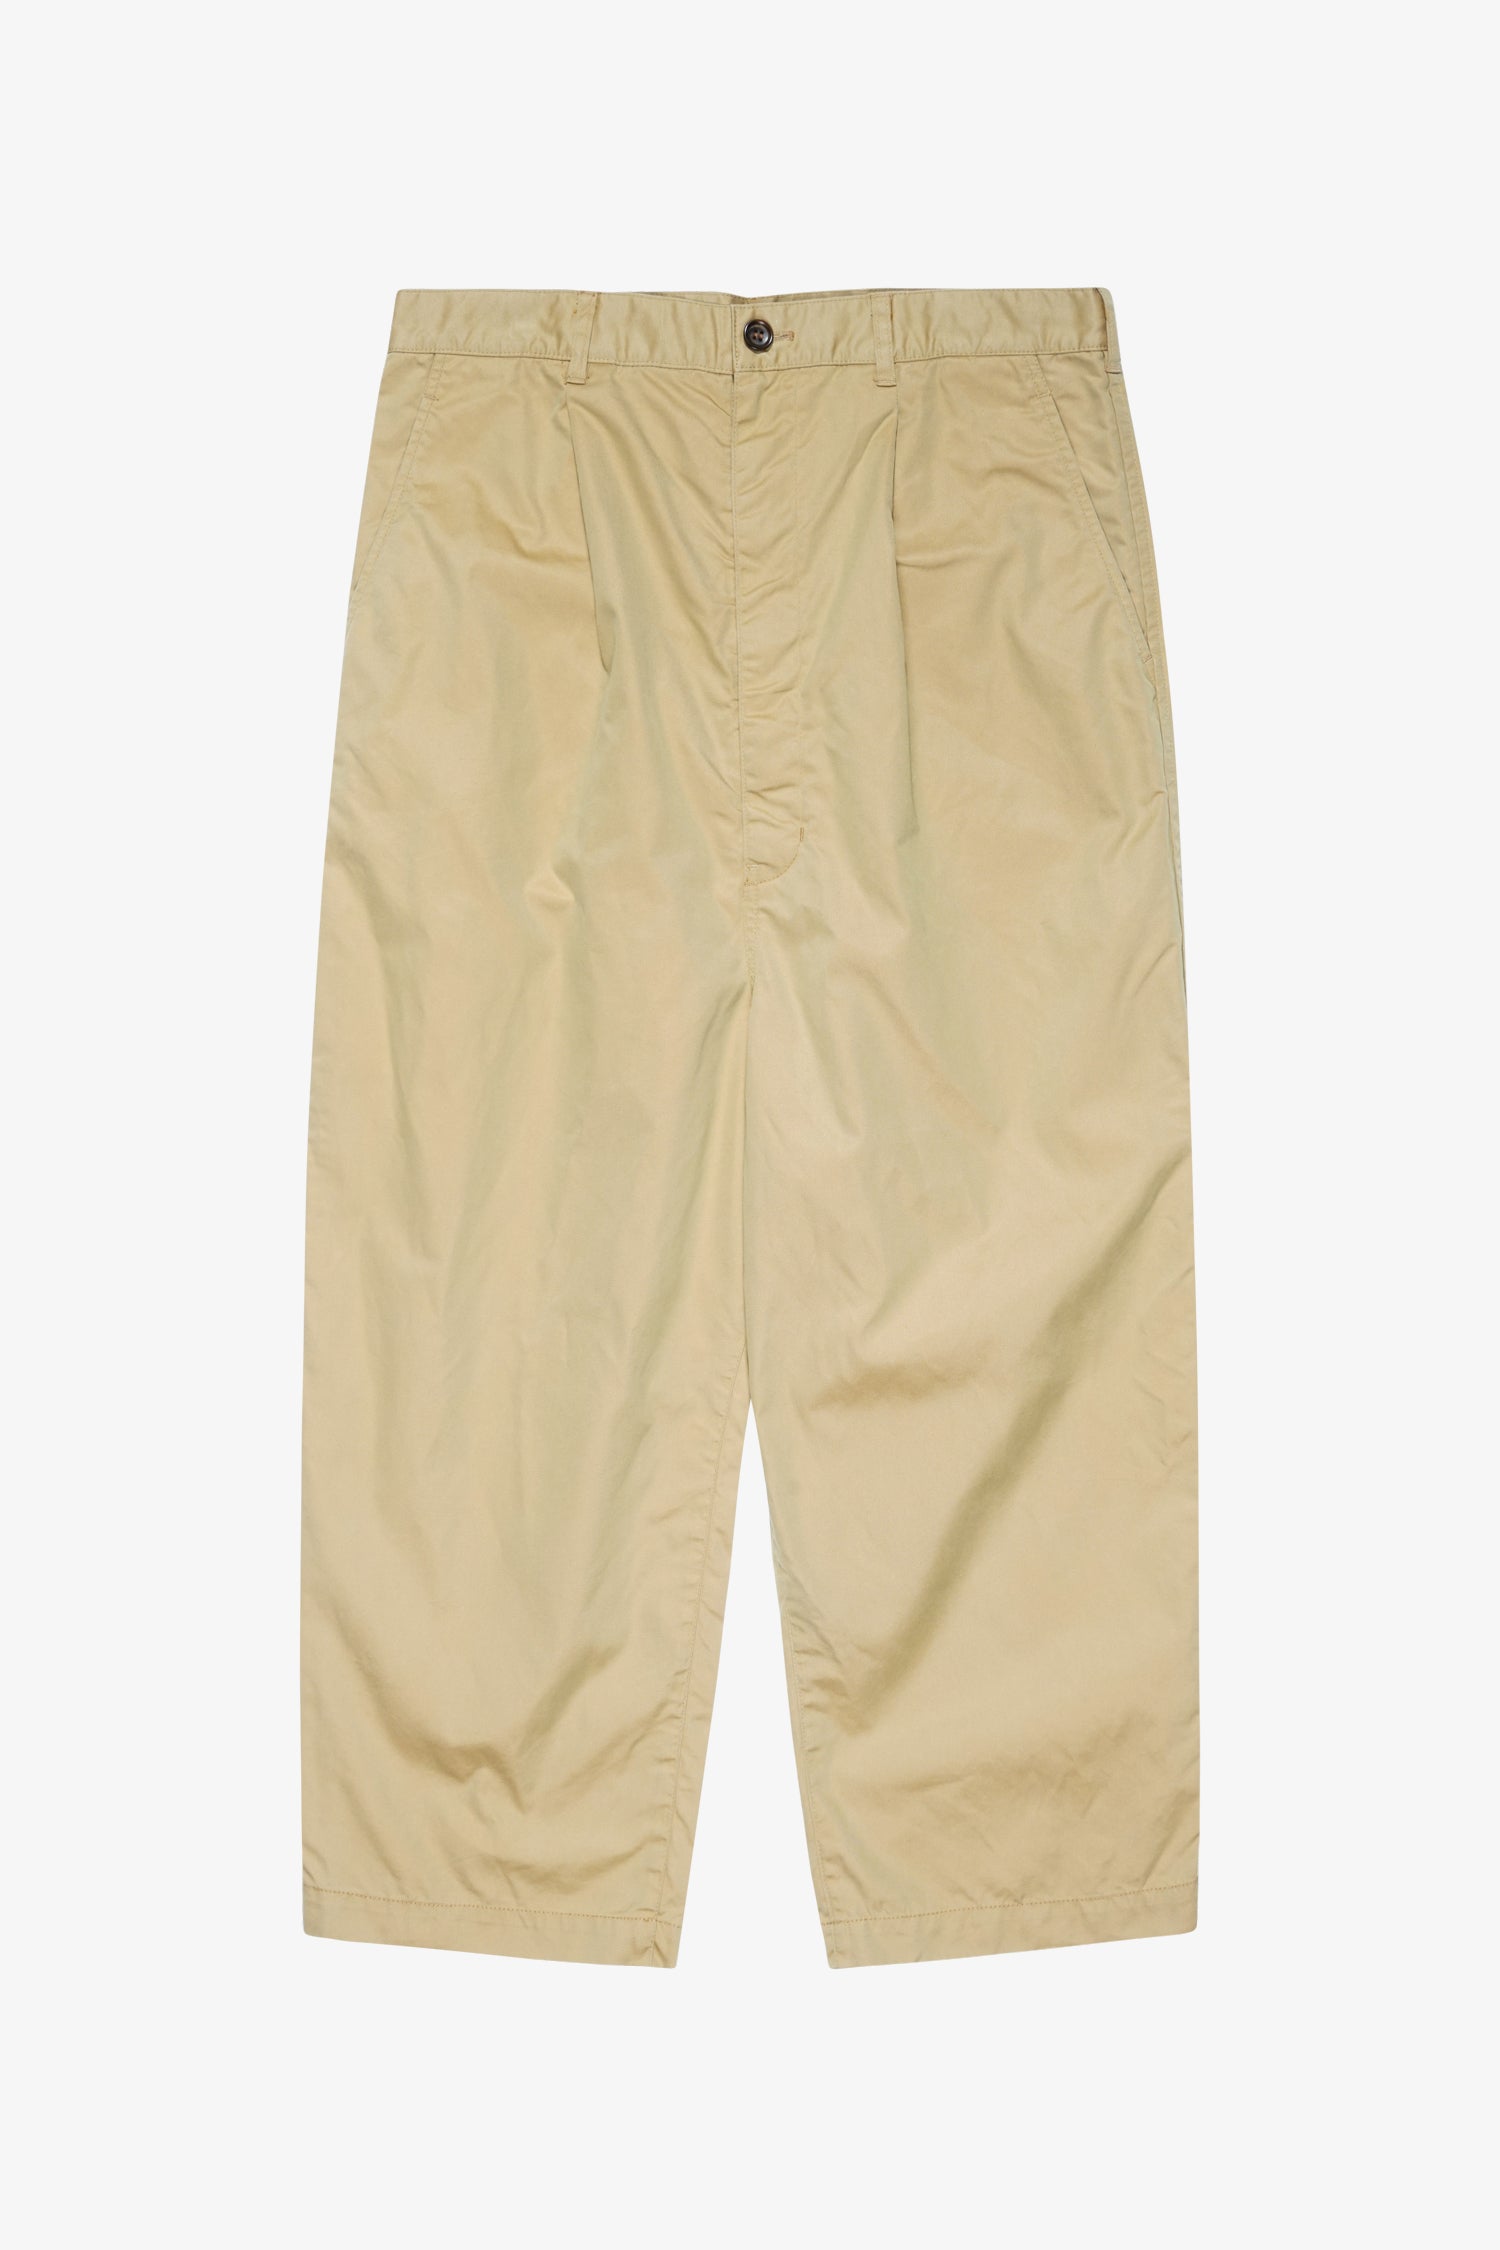 Selectshop FRAME - COMME DES GARÇONS HOMME Dyed Pants Bottoms Dubai